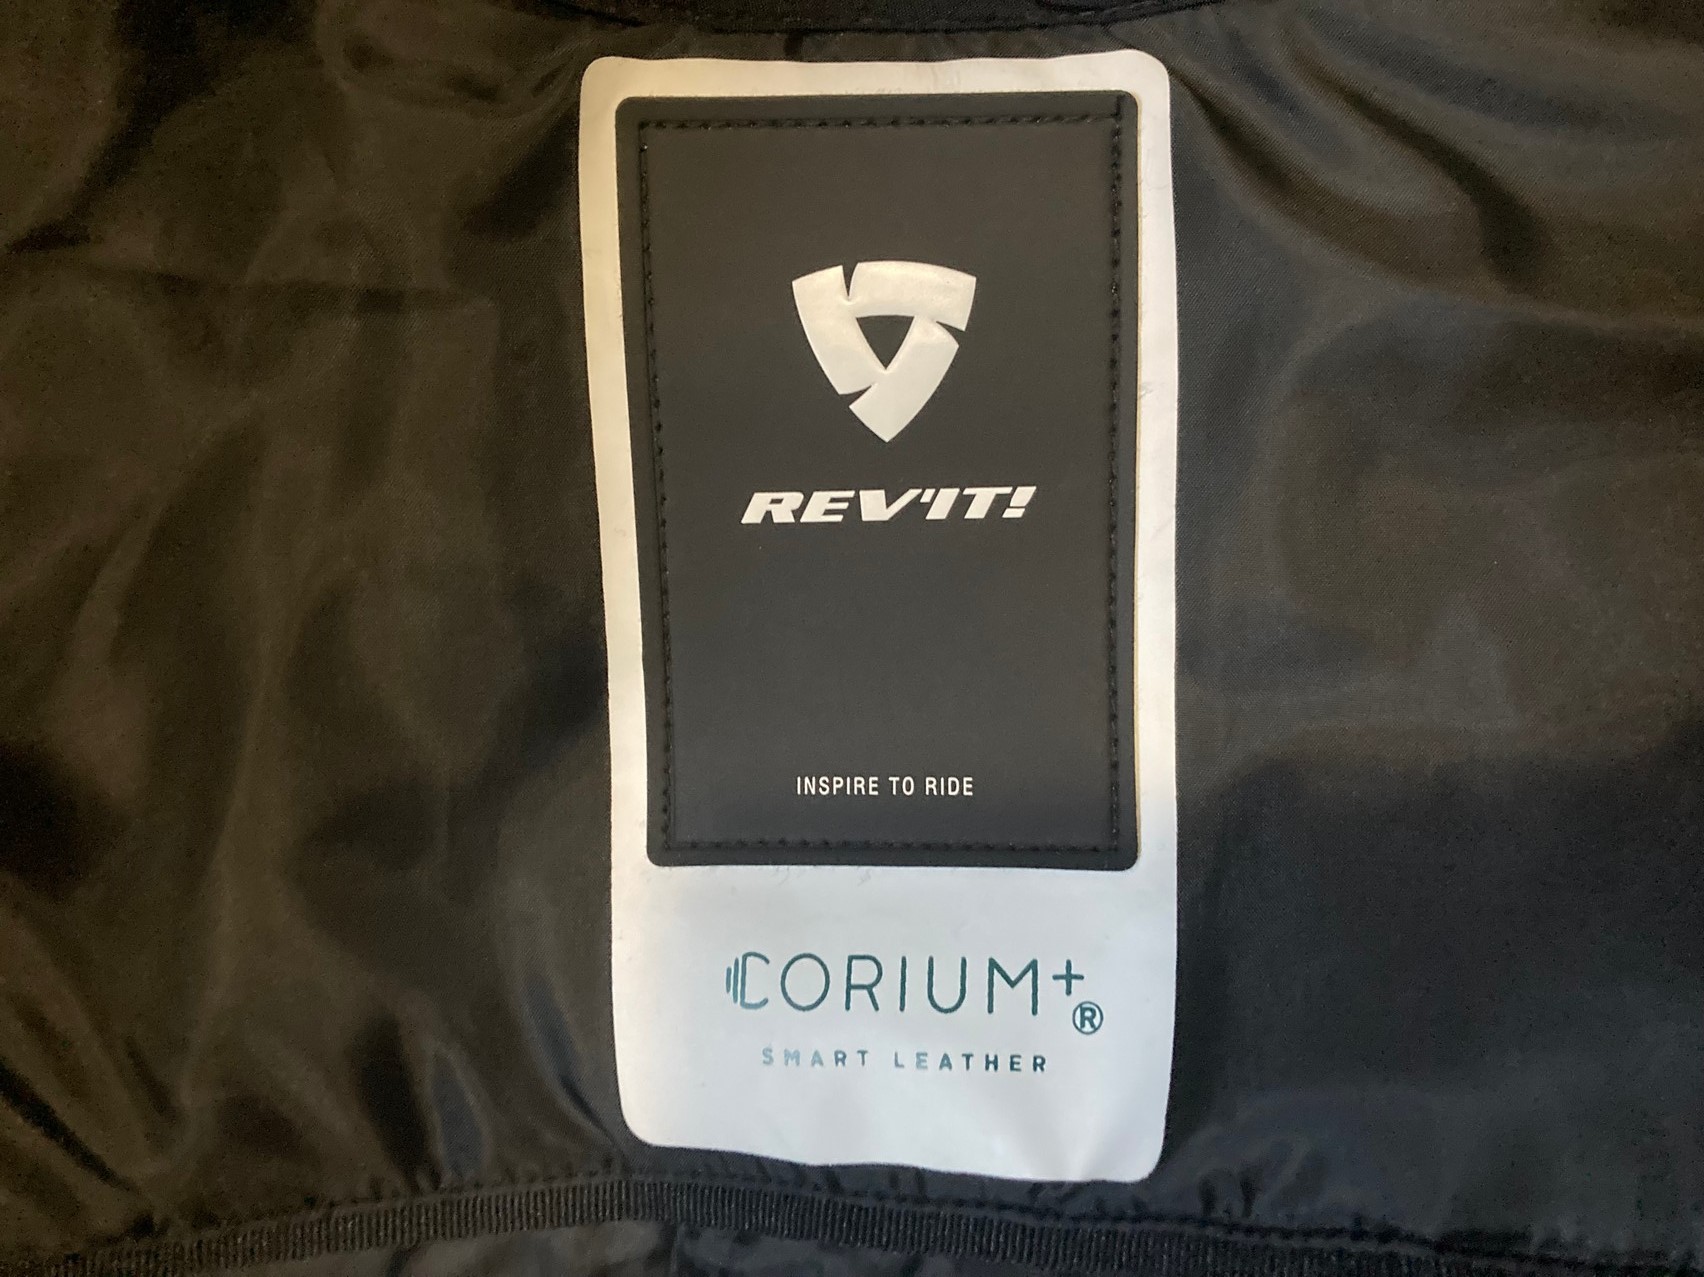 CORIUM+ interior tag on REV'IT! jacket